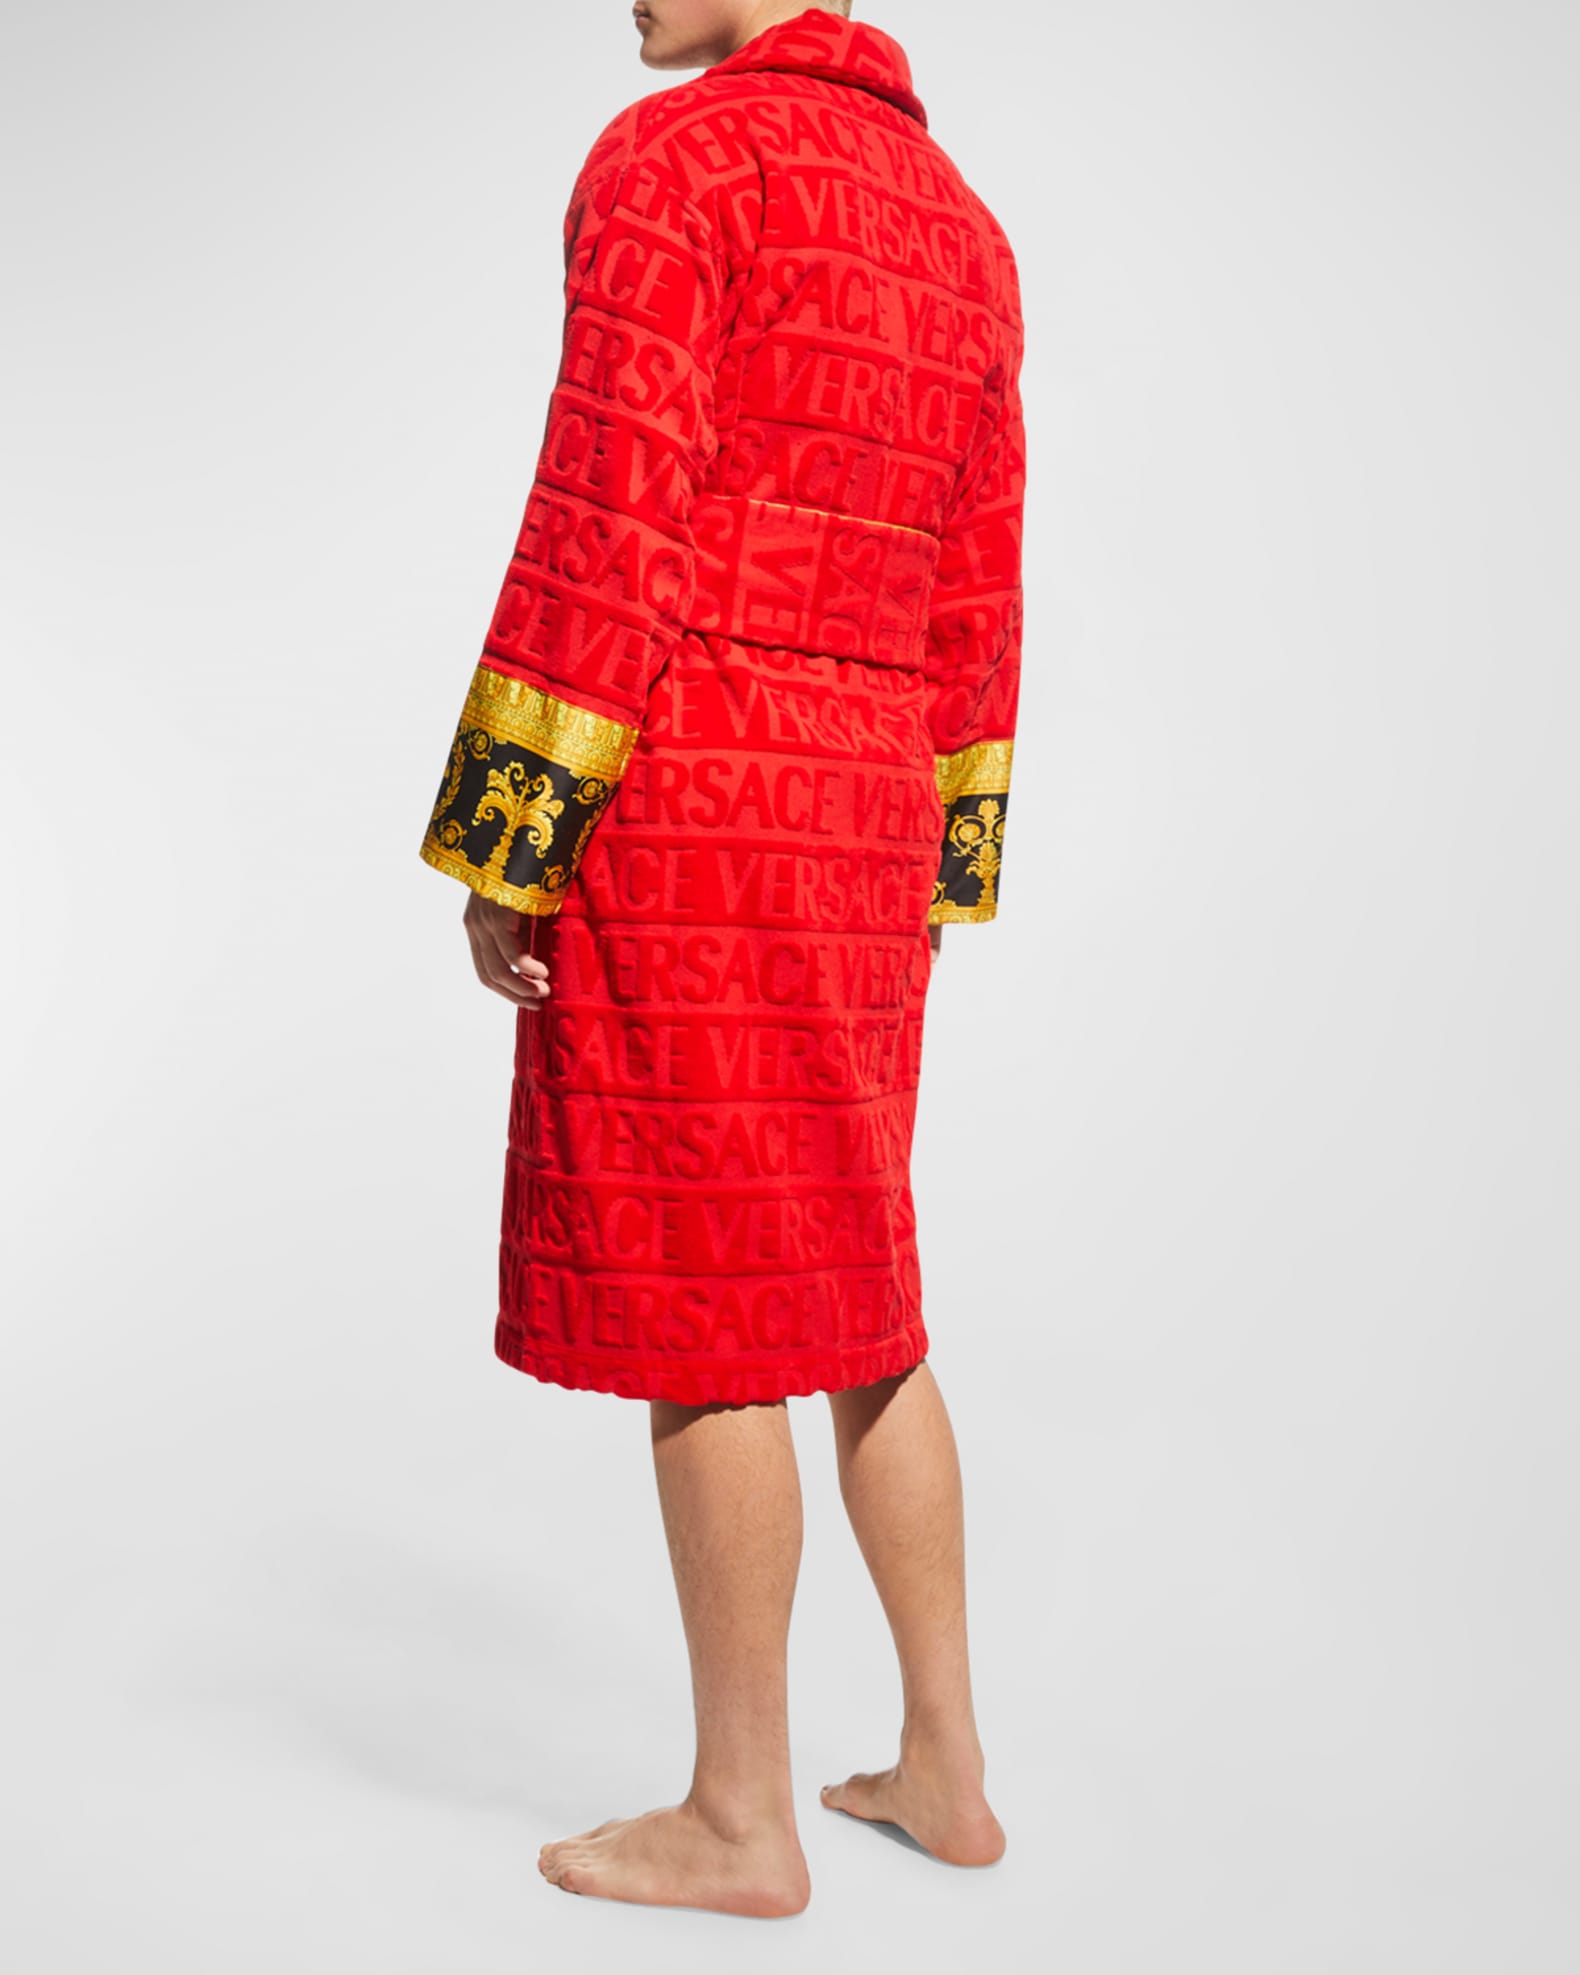 opwinding regisseur Komkommer Versace Men's Barocco Sleeve Robe | Neiman Marcus